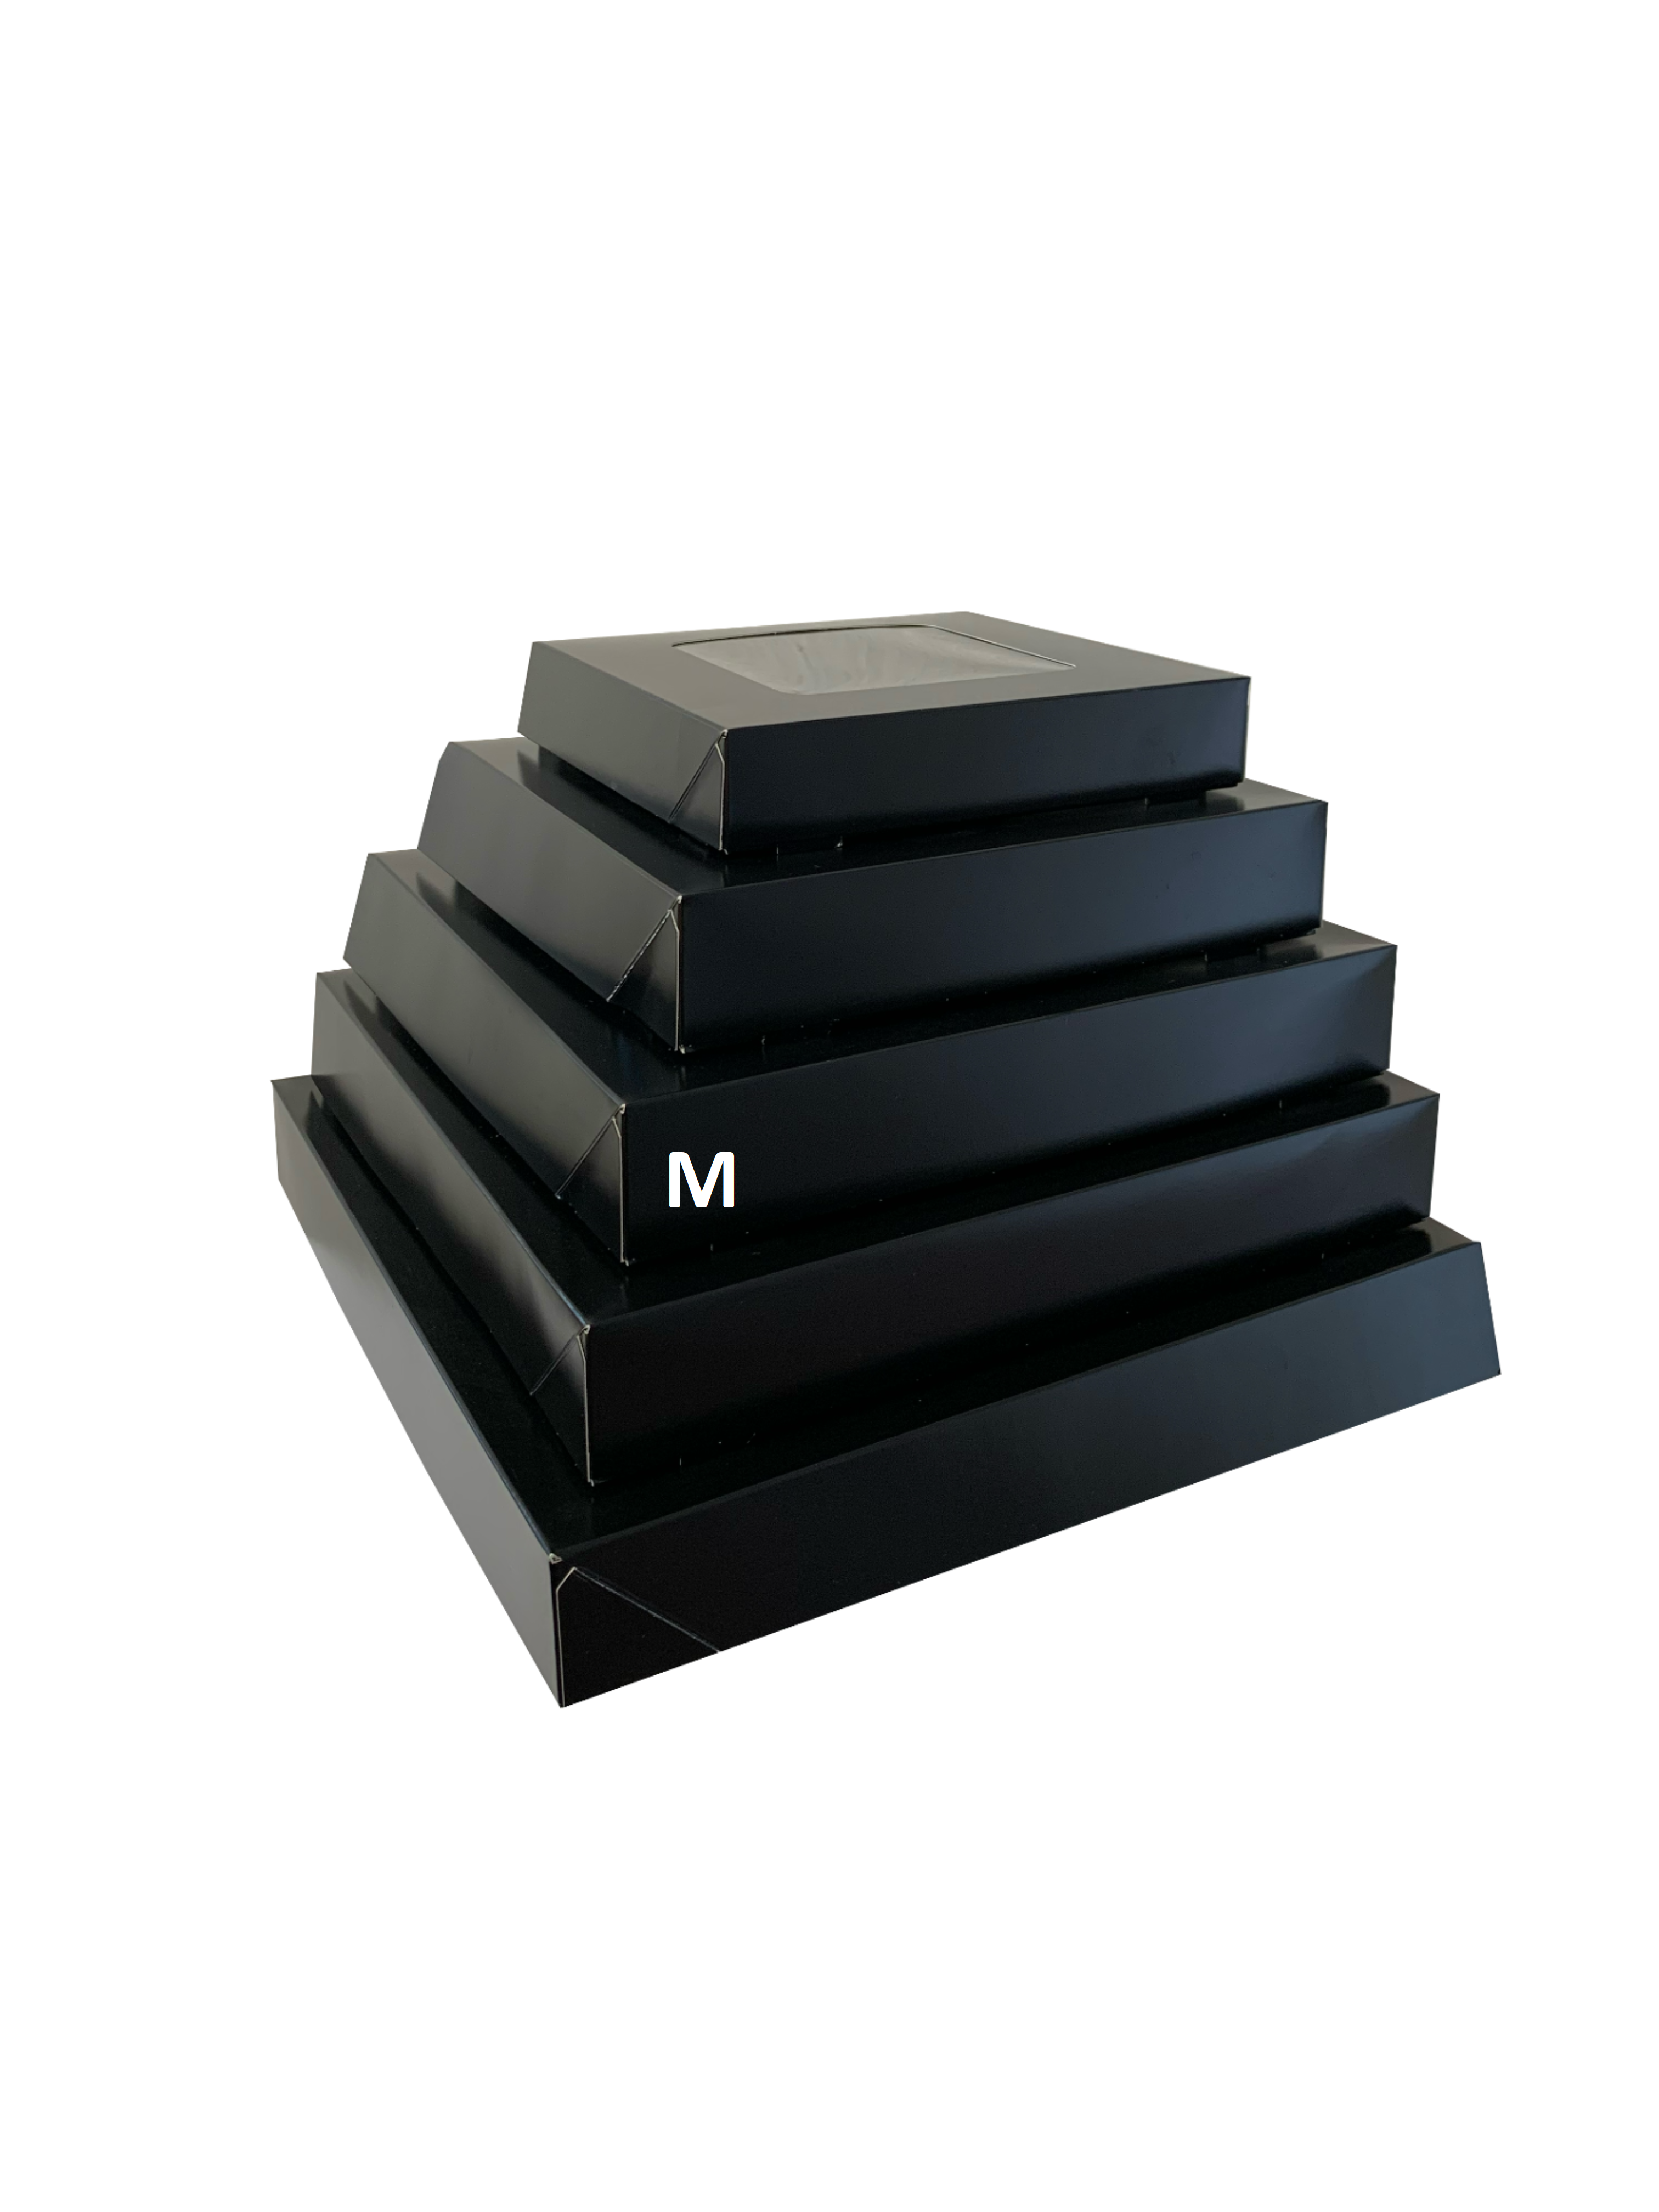 Bio Party-Sushi-Box 11 (M), 320x320x52 mm, "Black Edition", schwarz, mit Sichtfenster & Tray, 80 Stück/Karton